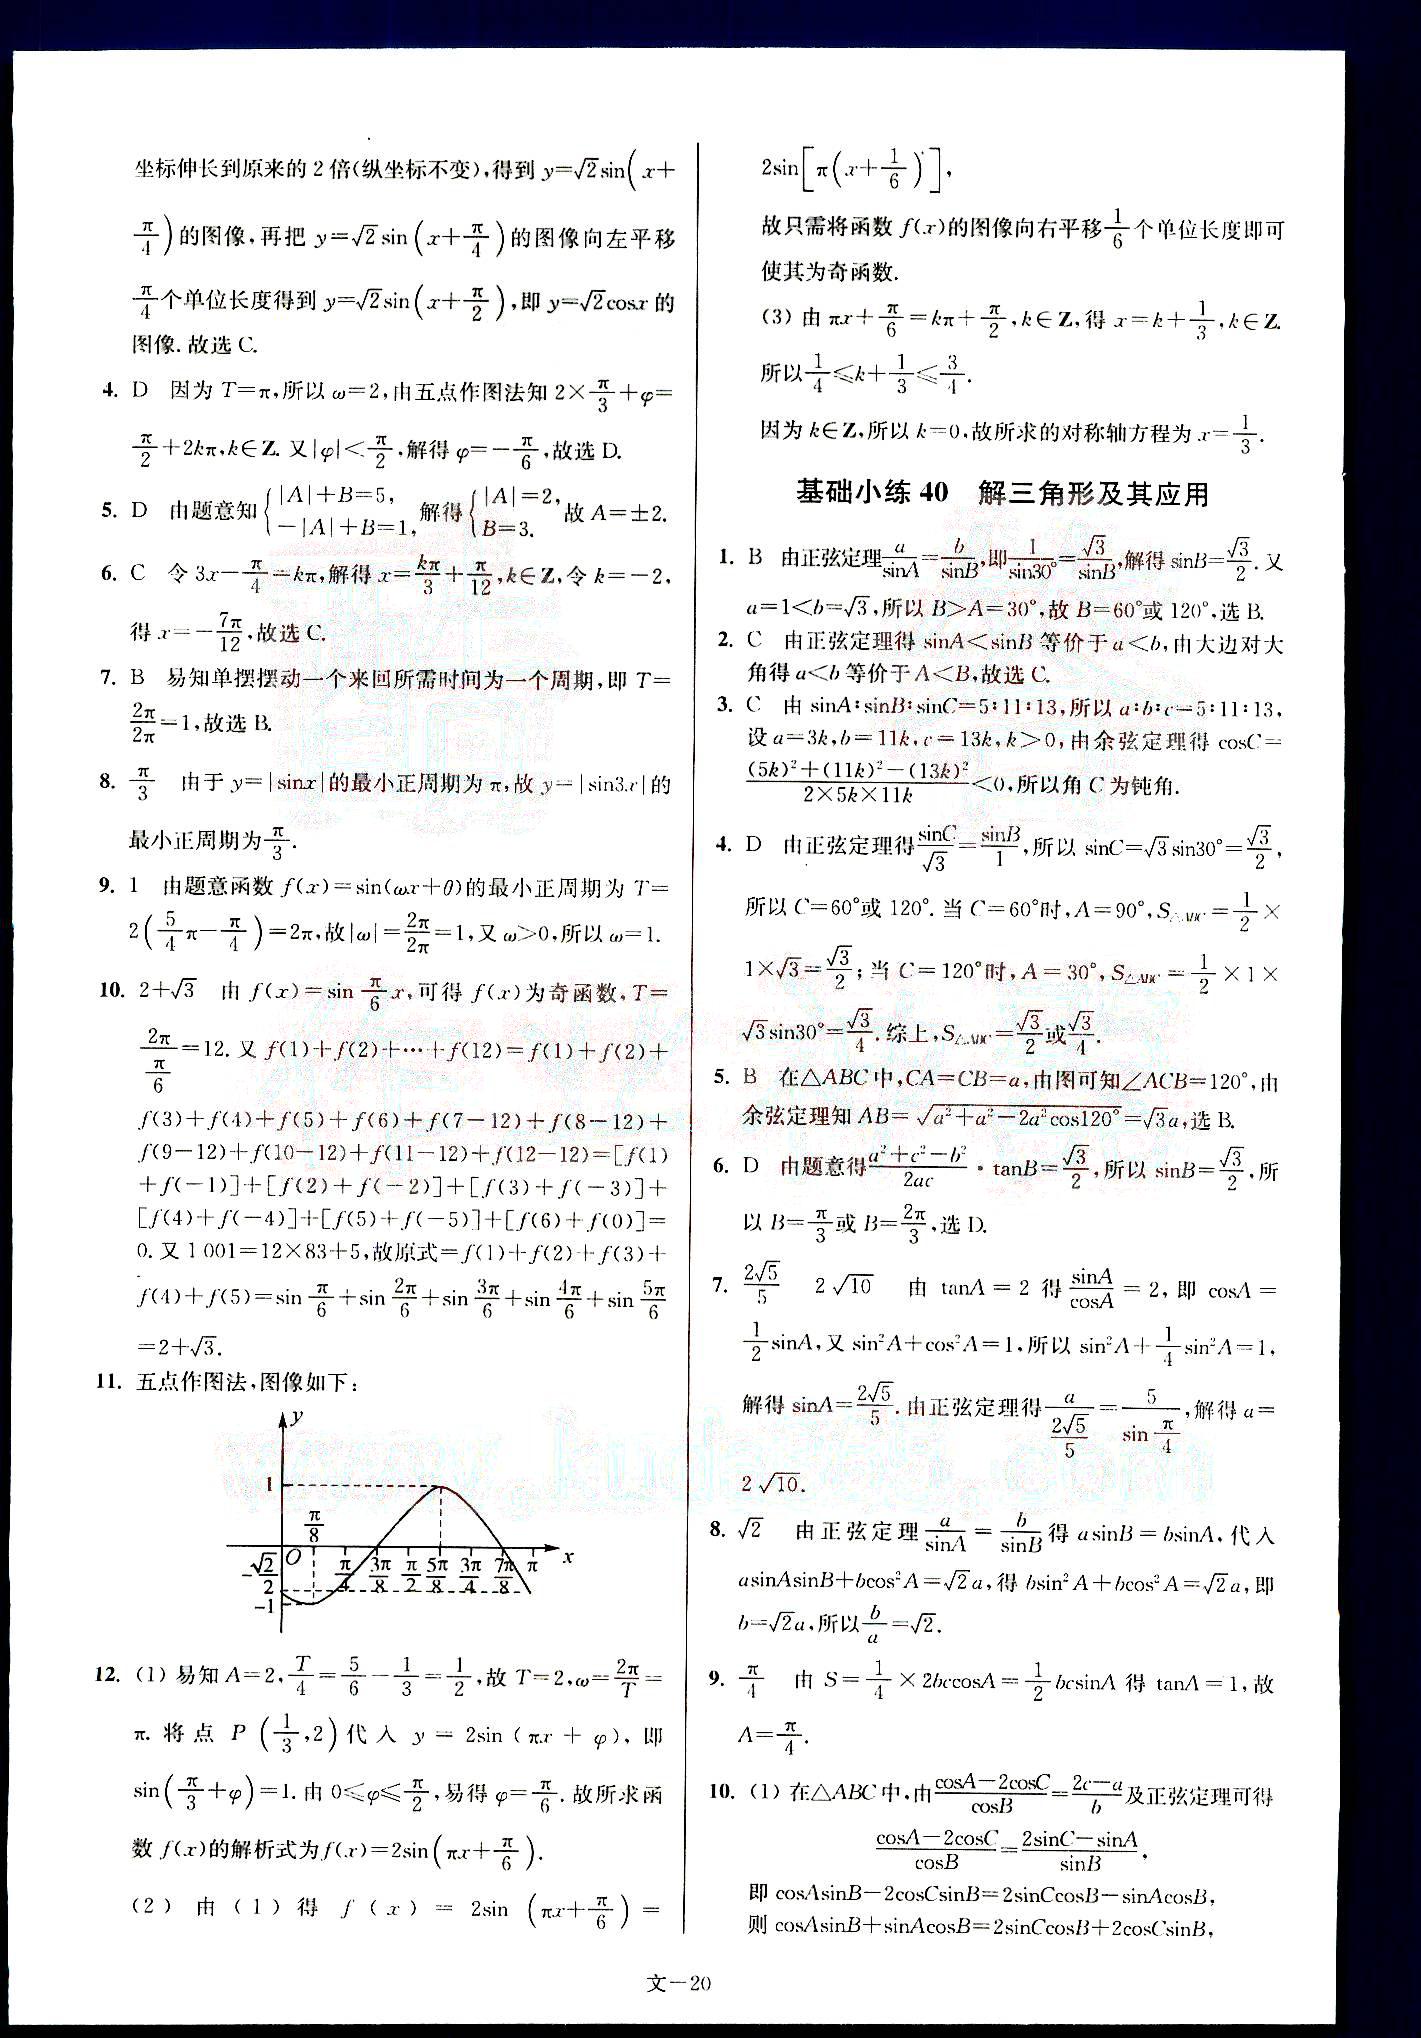 小题狂做-高考数学-文科-最基础篇南京大学出版社 第4部分 [5]